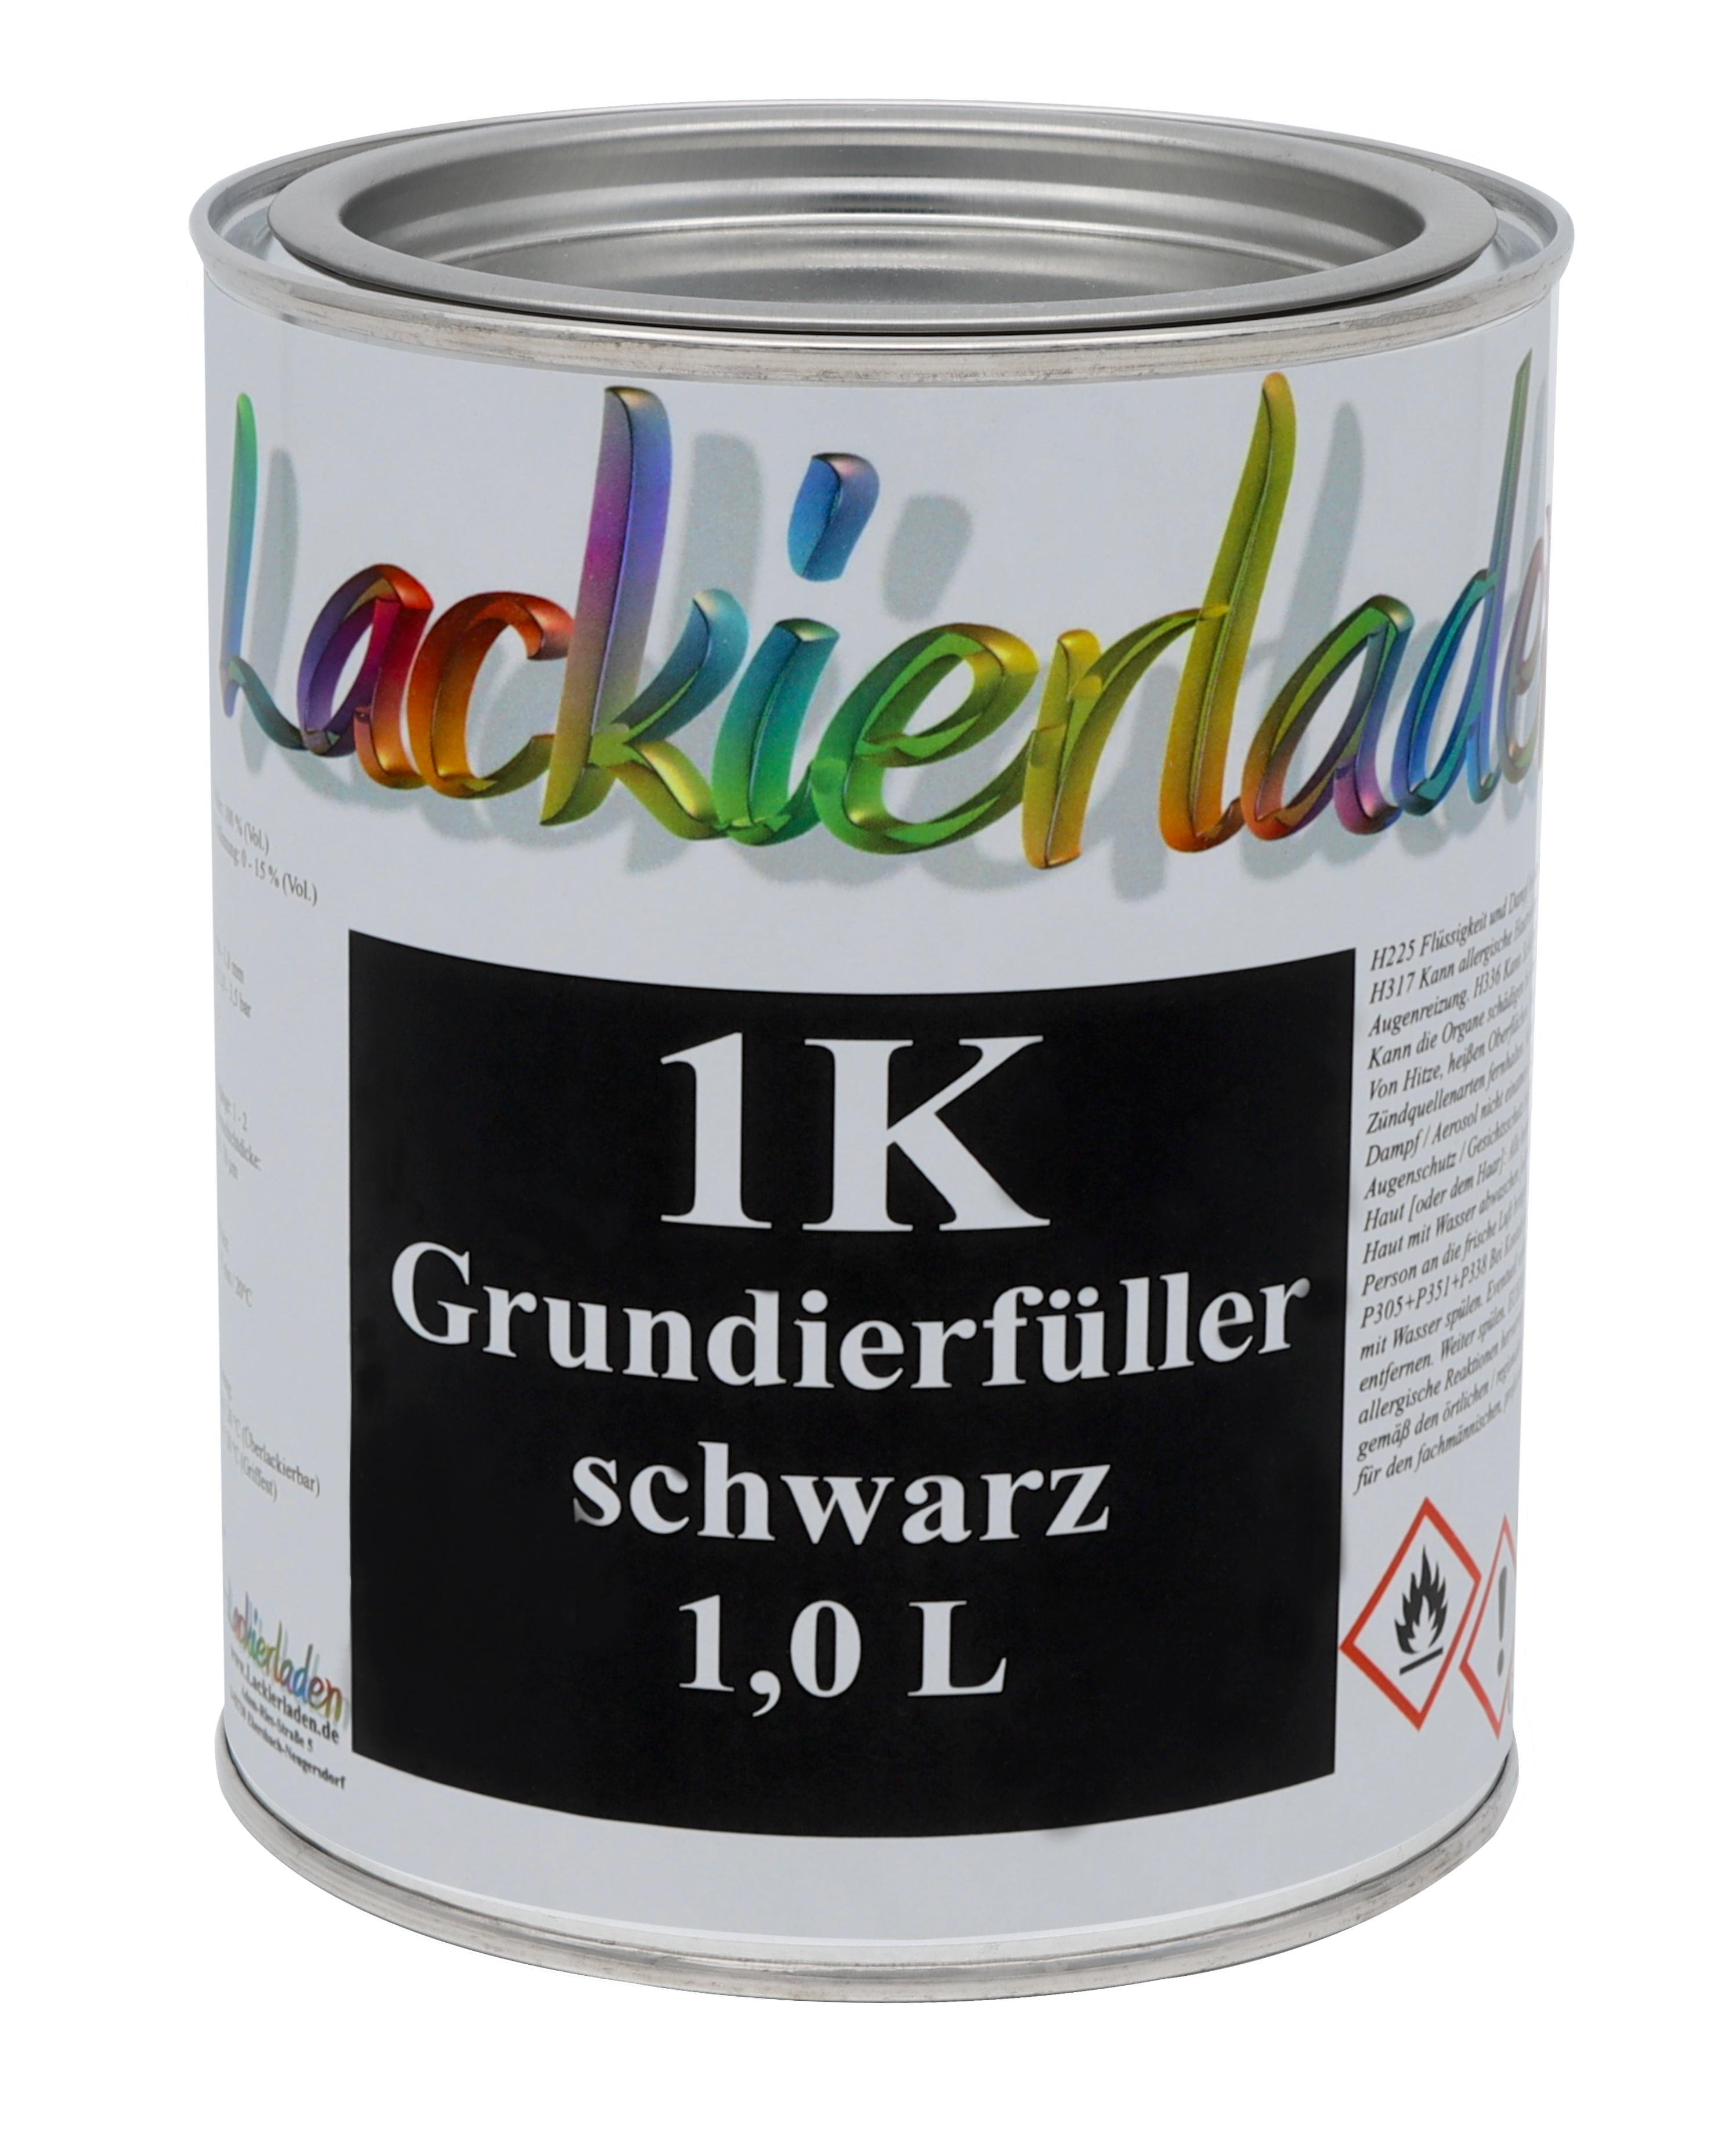 1K Grundierfüller schwarz 1,0 L | grundieren Primer 1L black Filler Haftgrund